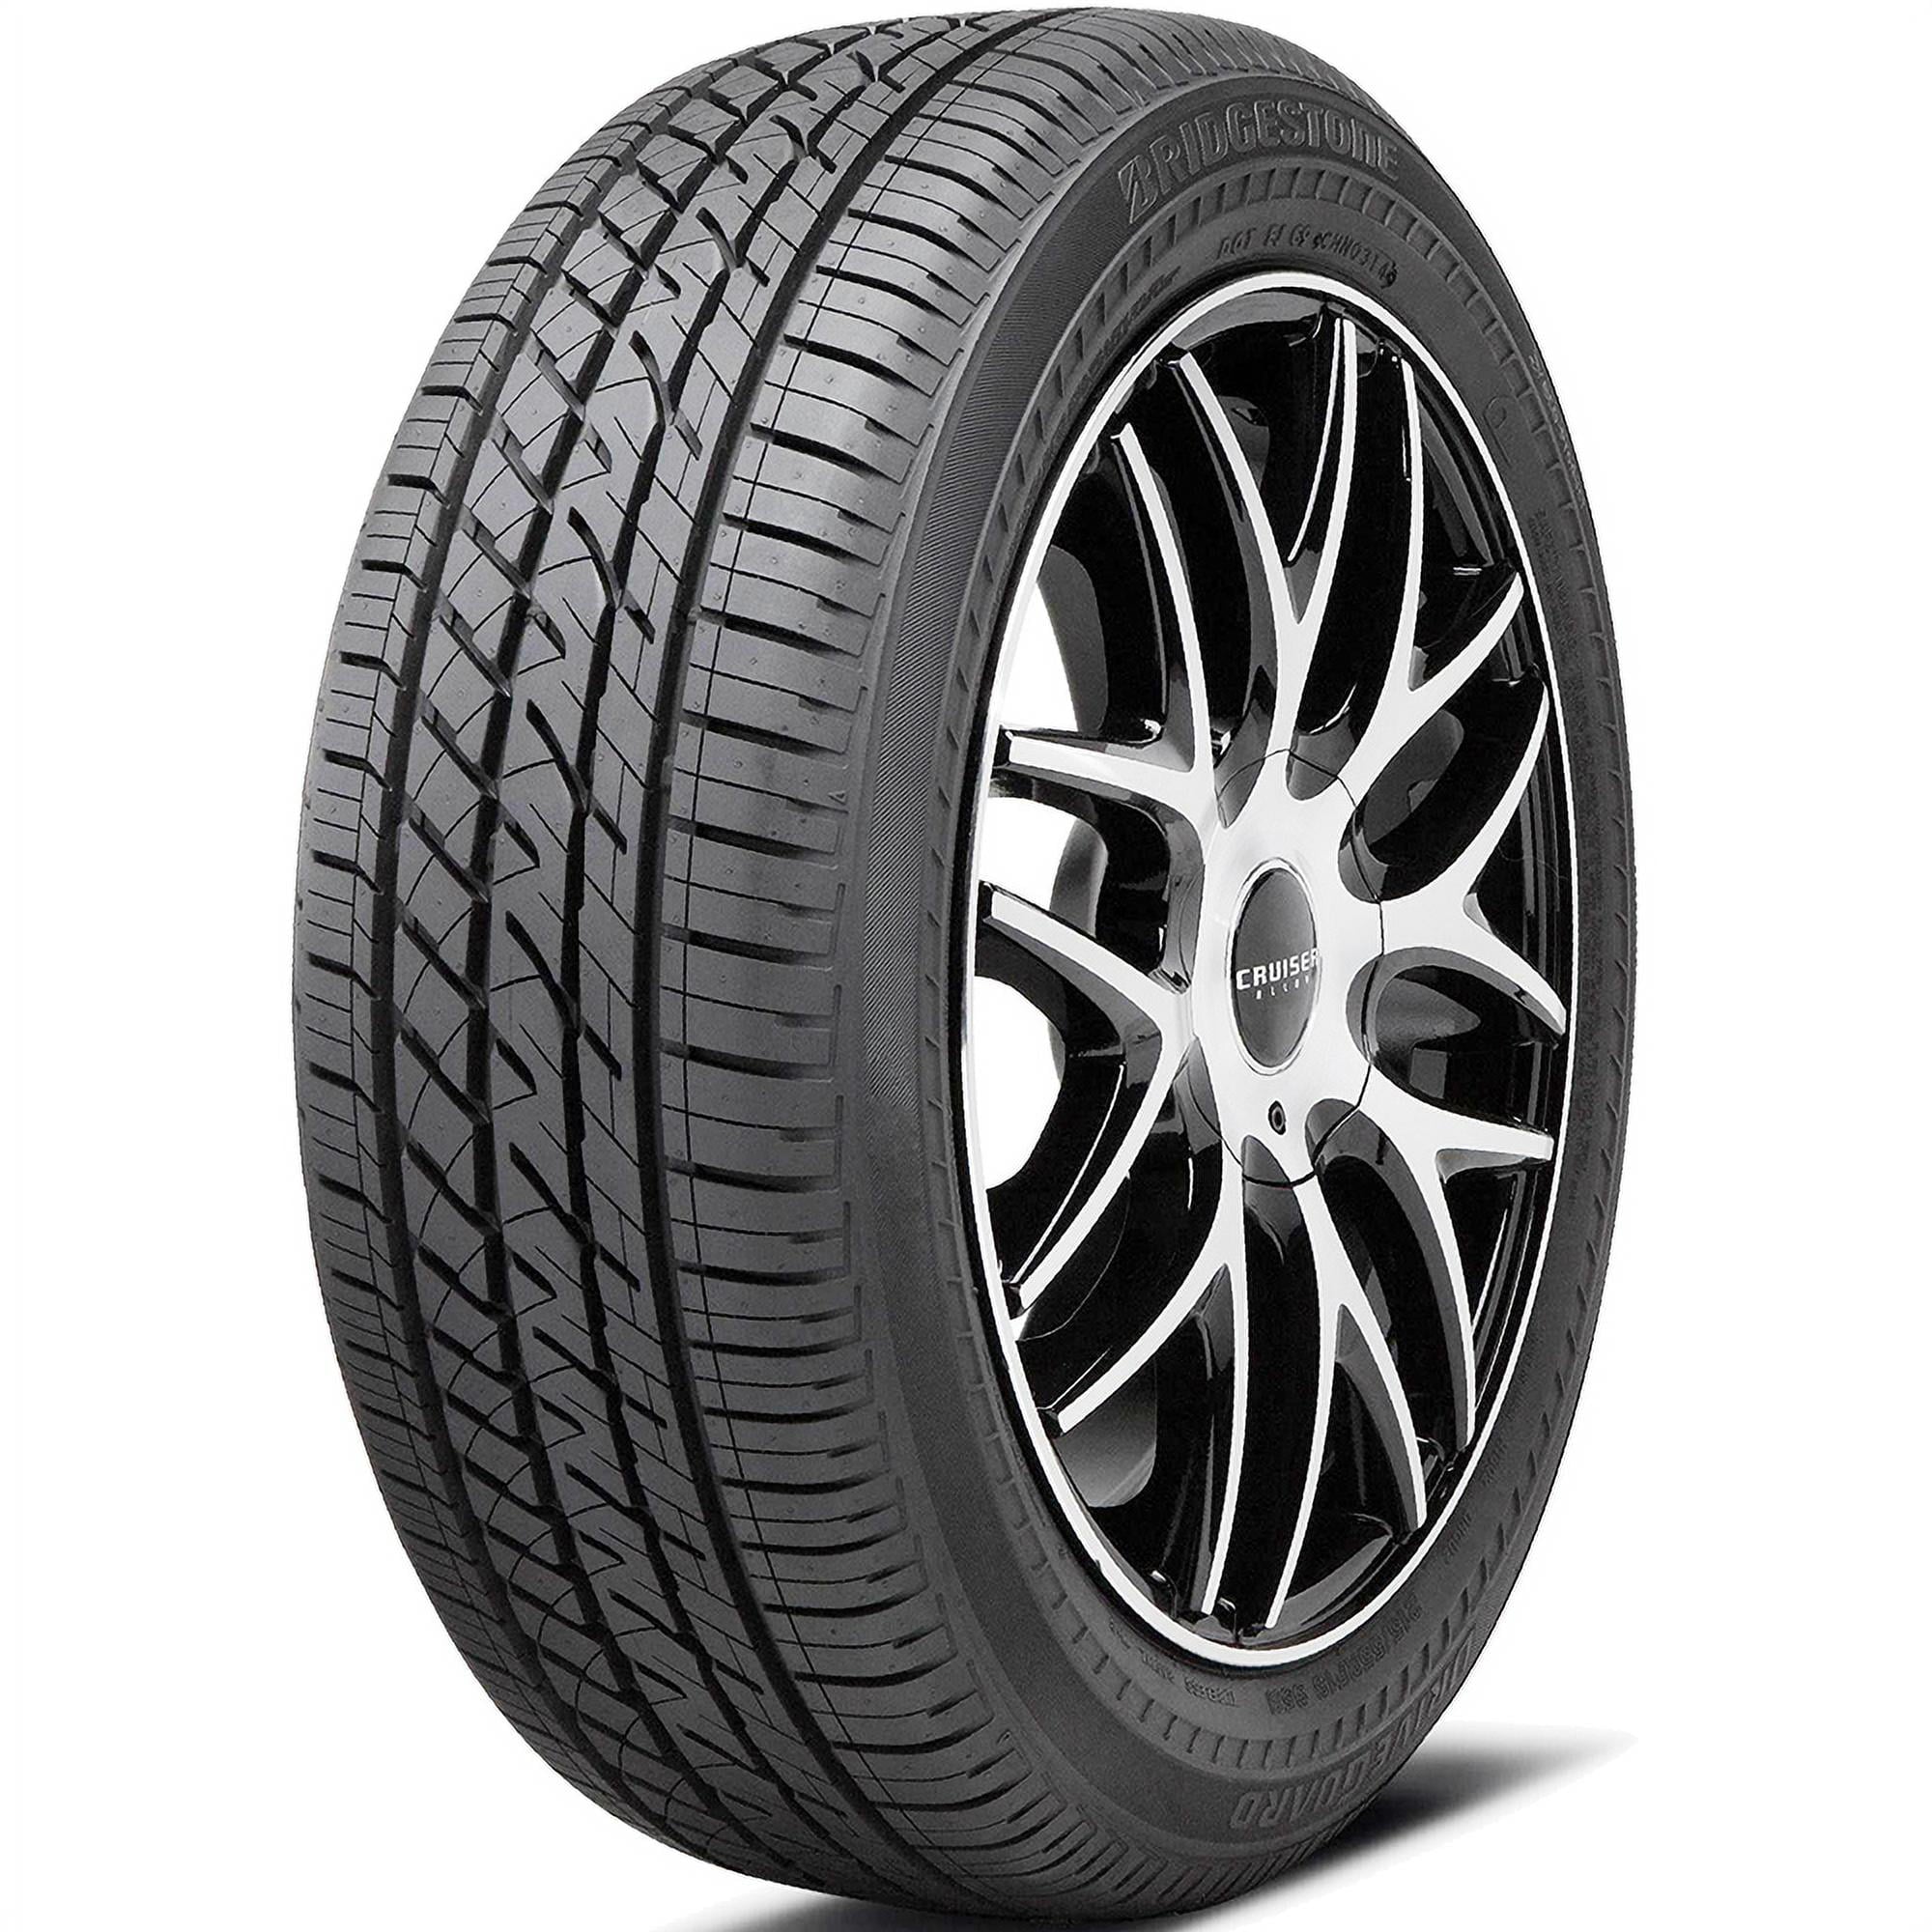 Bridgestone DriveGuard 245/45R19 102W XL A/S Performance Run Flat Tire